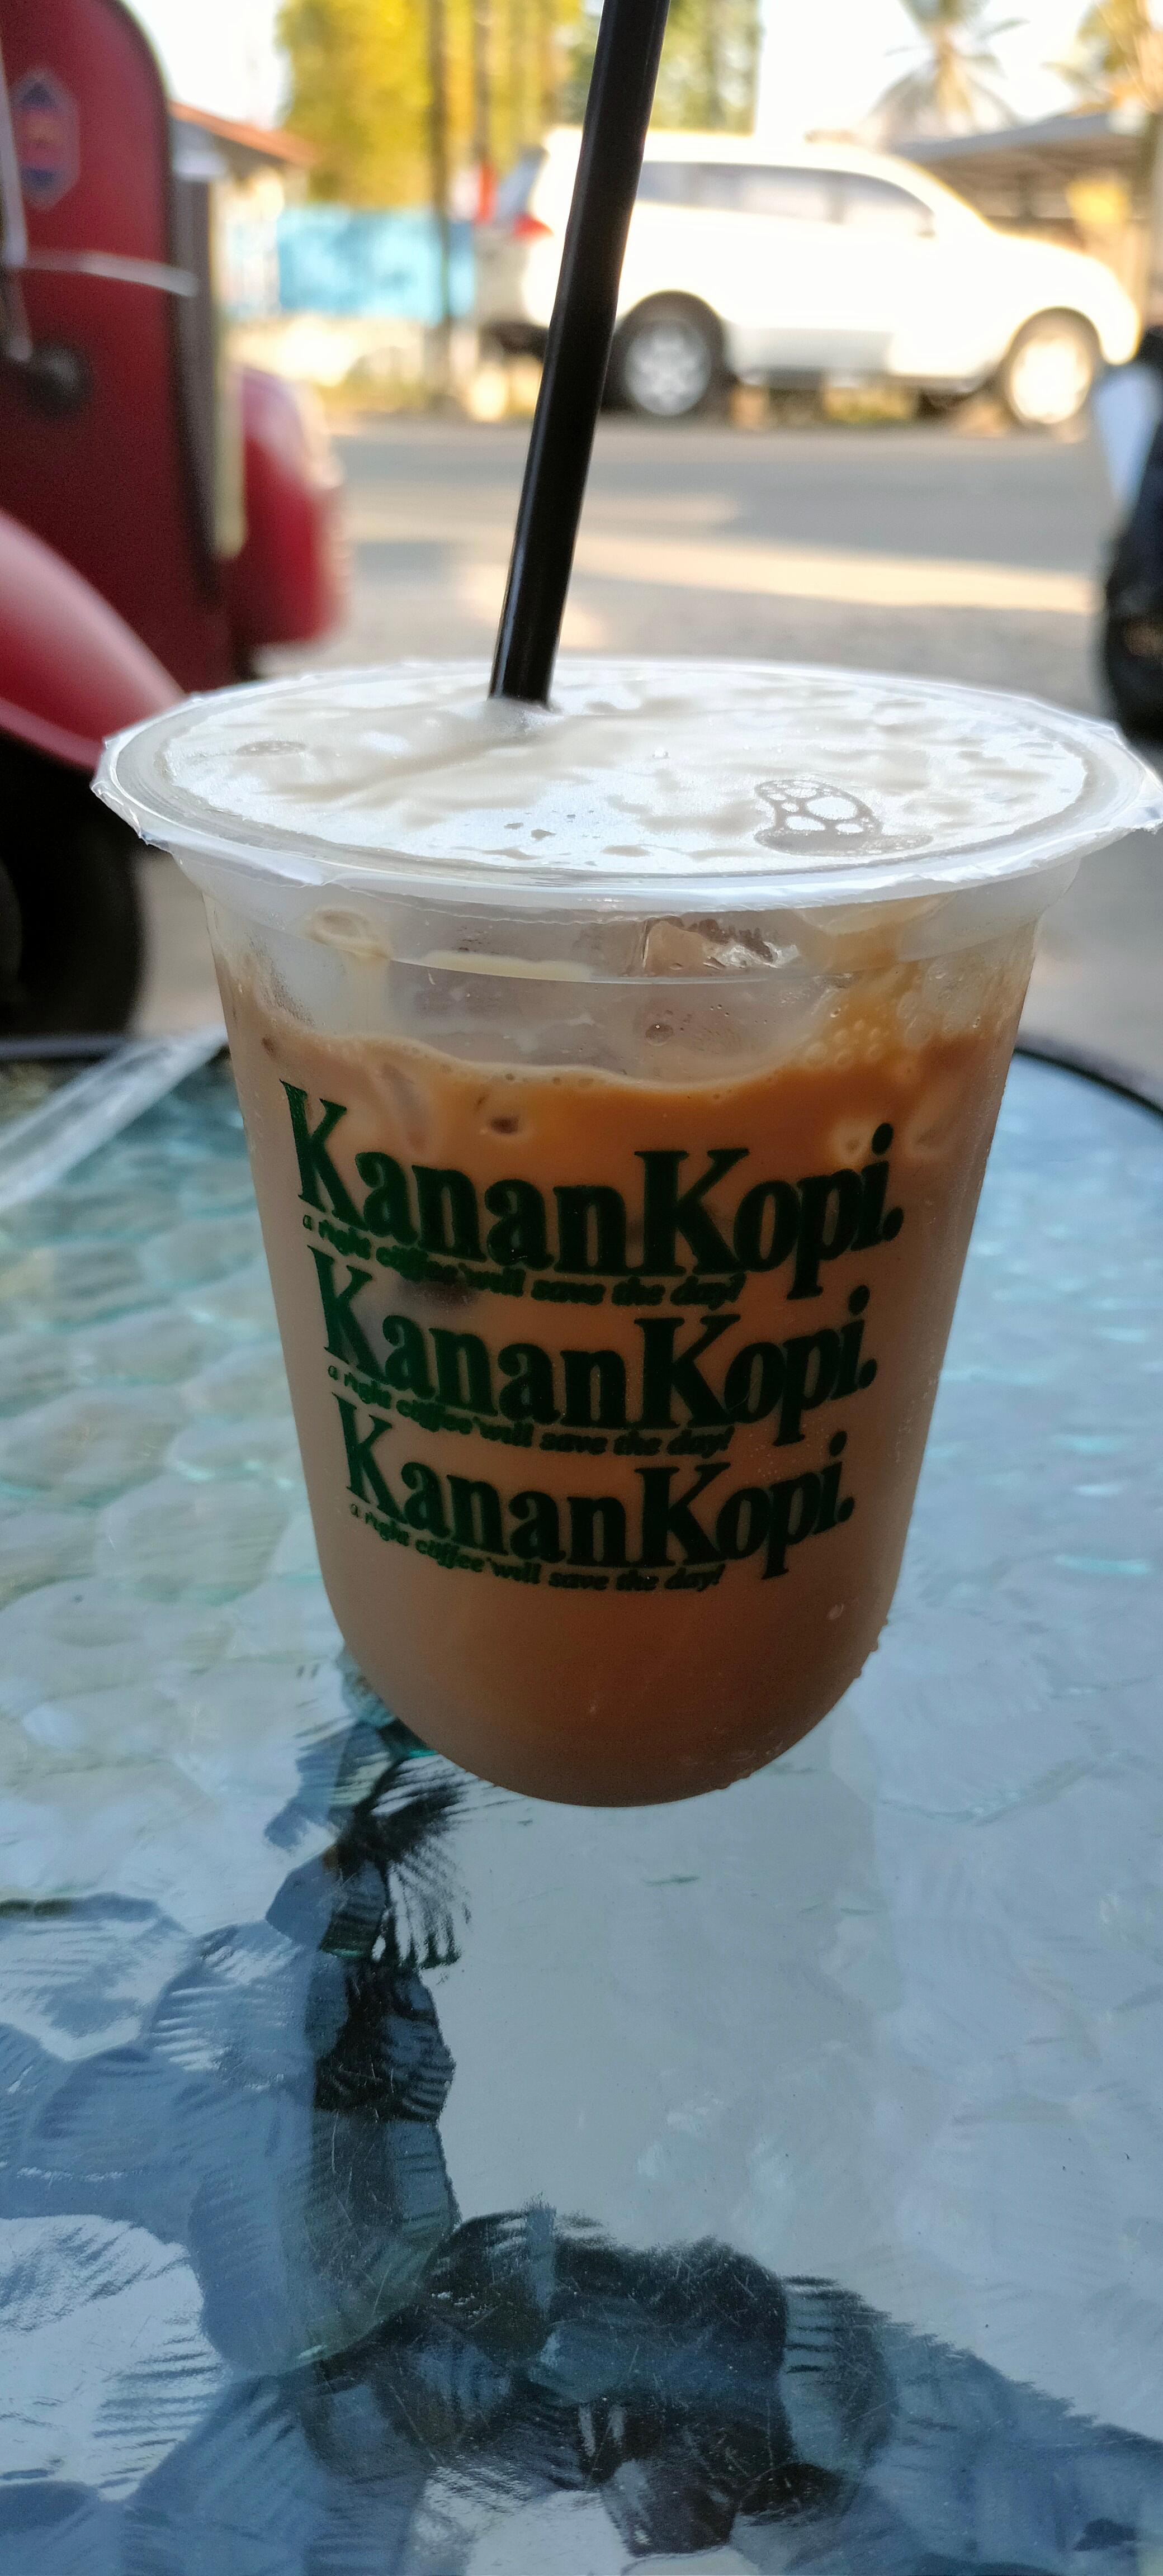 Kanankopi review